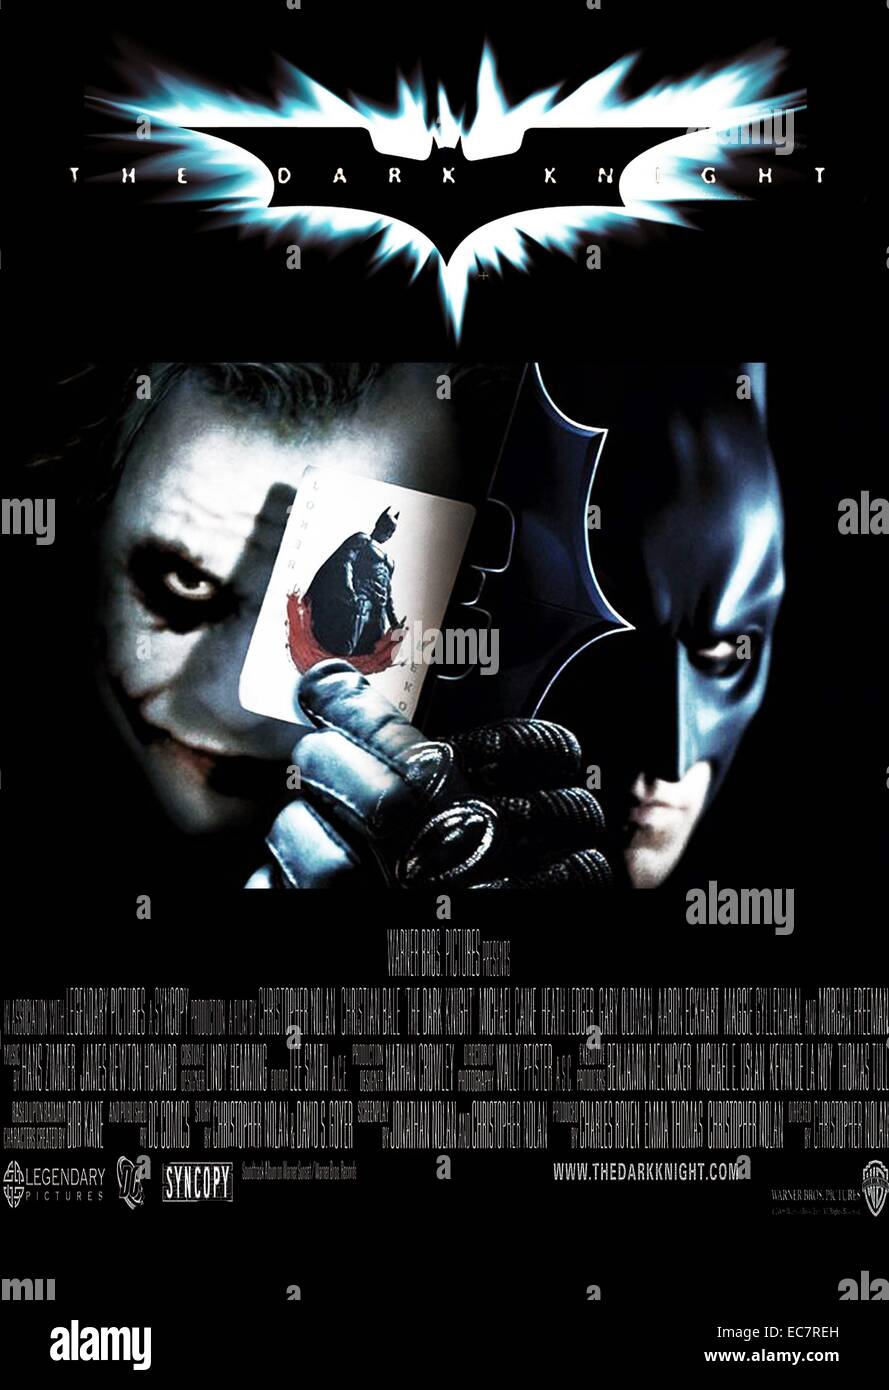 The Dark Knight es un superhéroe épico anglo-estadounidense que propone 2008  película dirigida, producida y cowritten por Christopher Nolan. Basada en  el personaje de DC Comics Batman, la película es la segunda